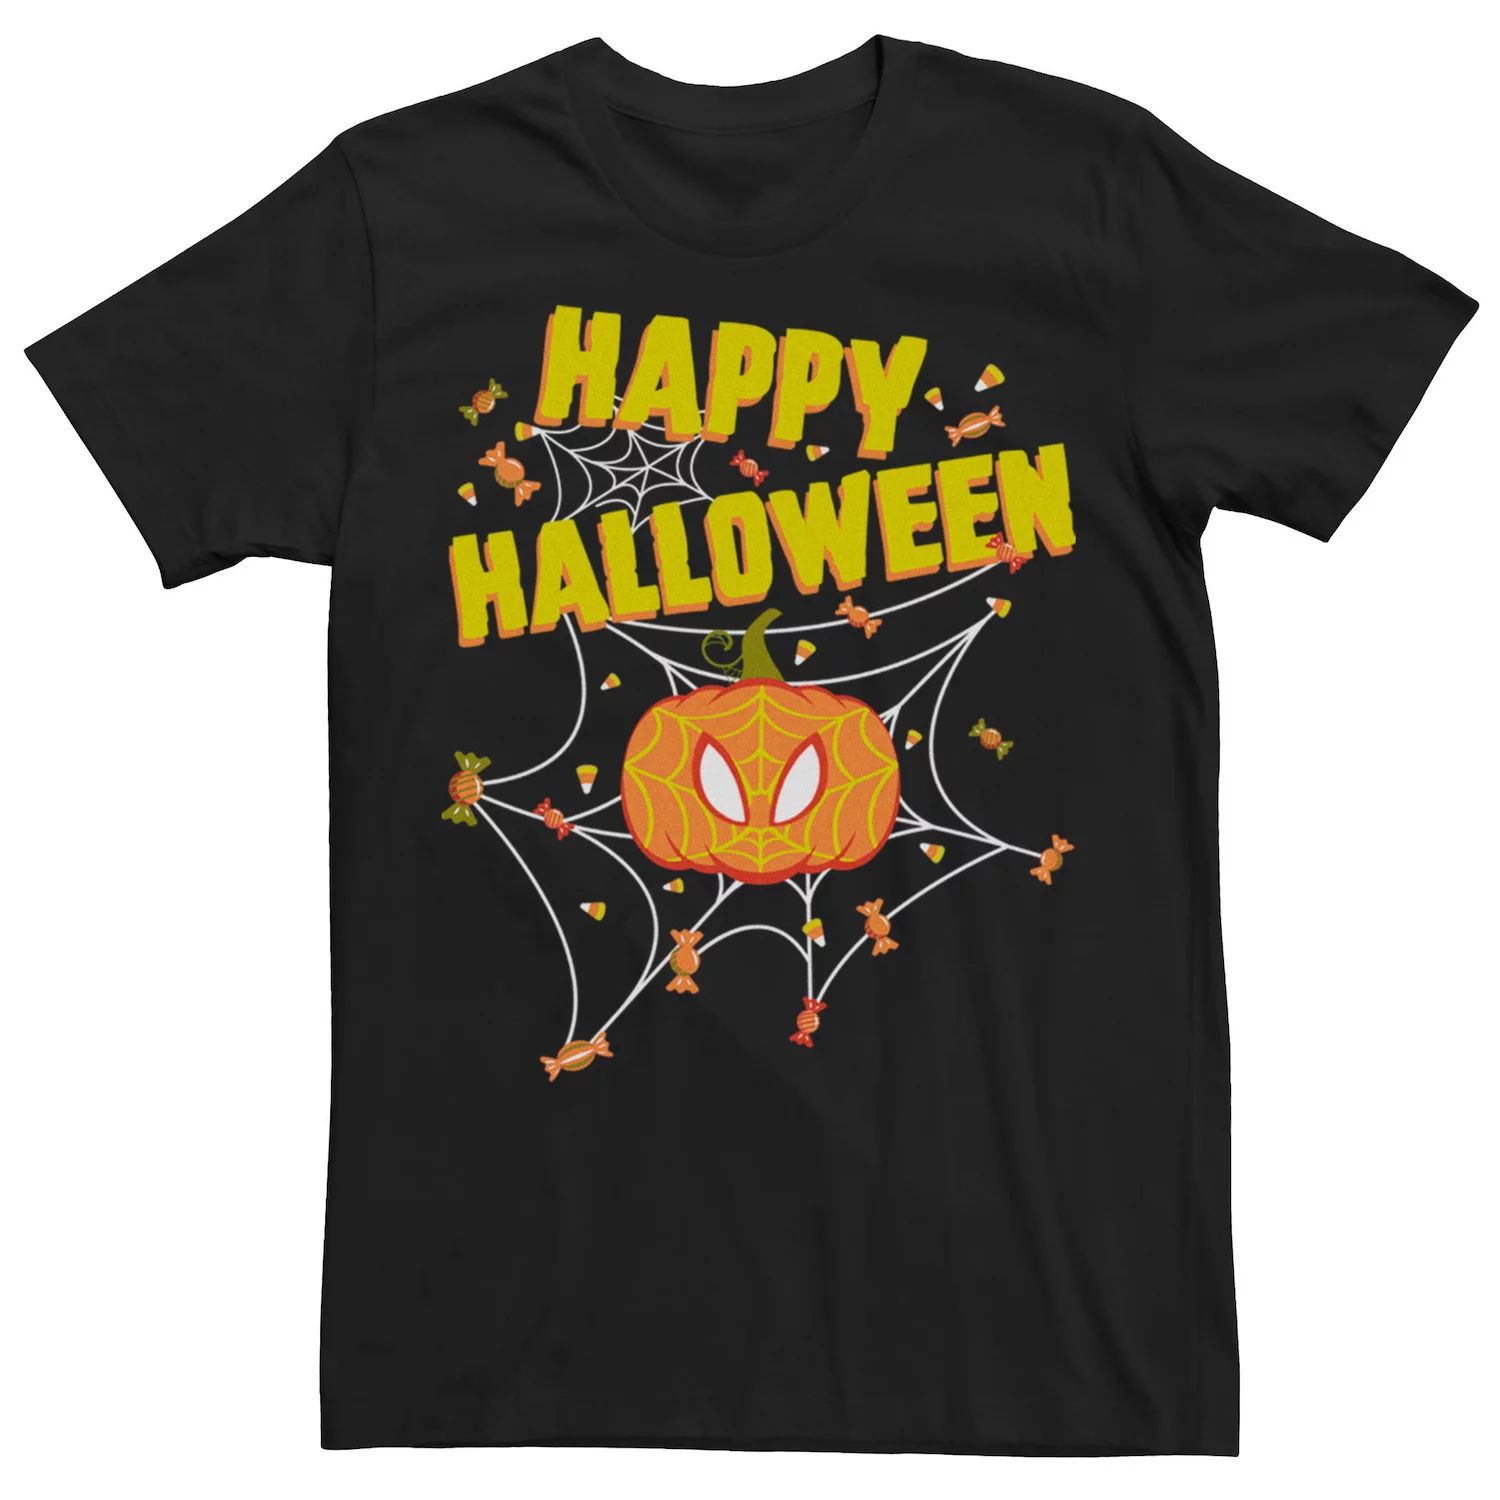 Мужская футболка Happy Halloween с изображением Человека-паука и тыквы Marvel